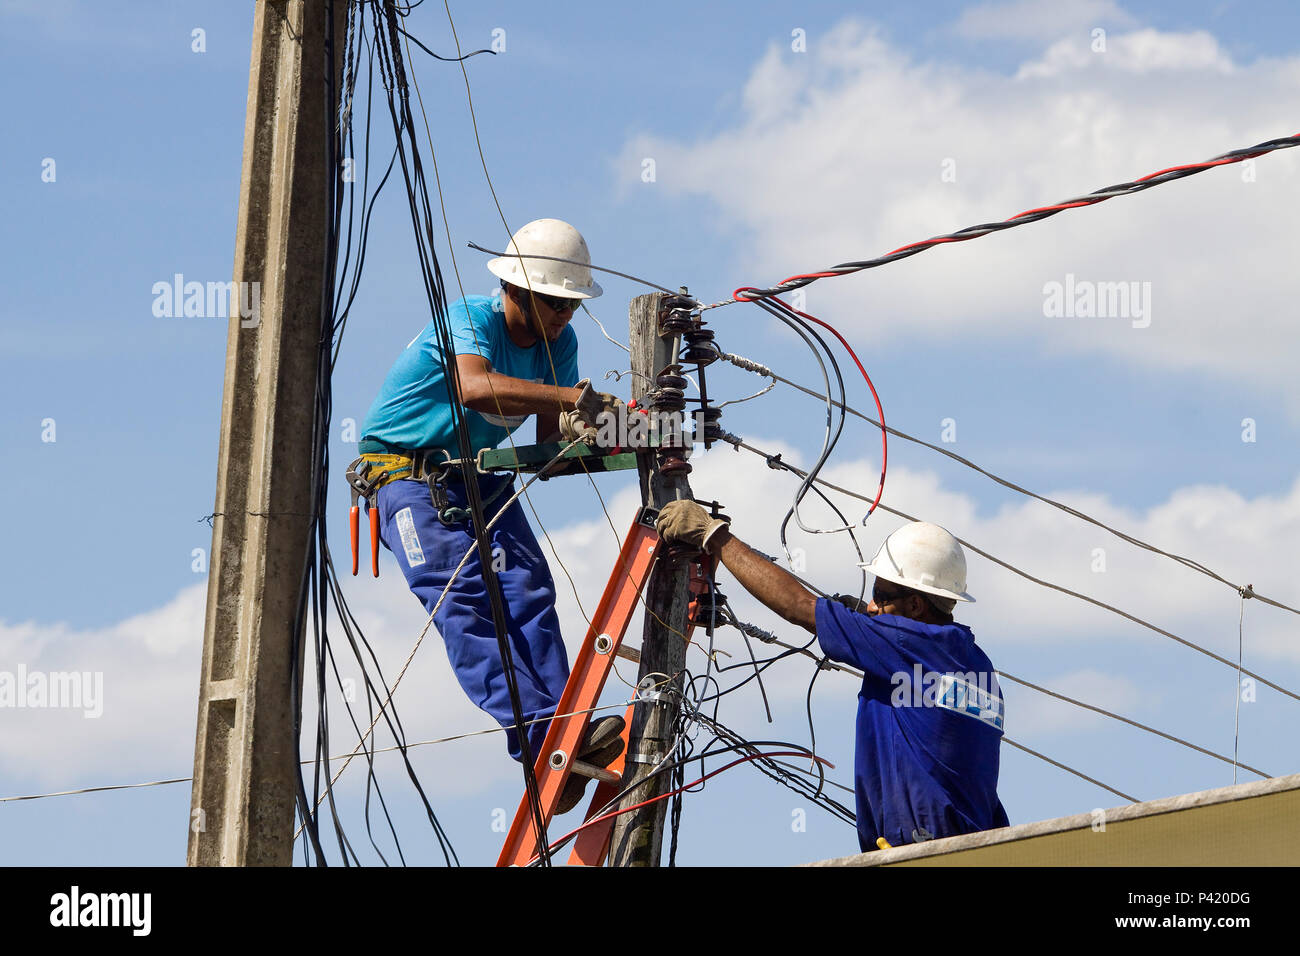 Passo do Lontra - Corumbá - Mato Grosso do Sul Eletricista Rede Elétrica Energia Elétrica Poste de Luz Manutenção elétrica de rua Homens trabalhando na rede elétrica Stock Photo